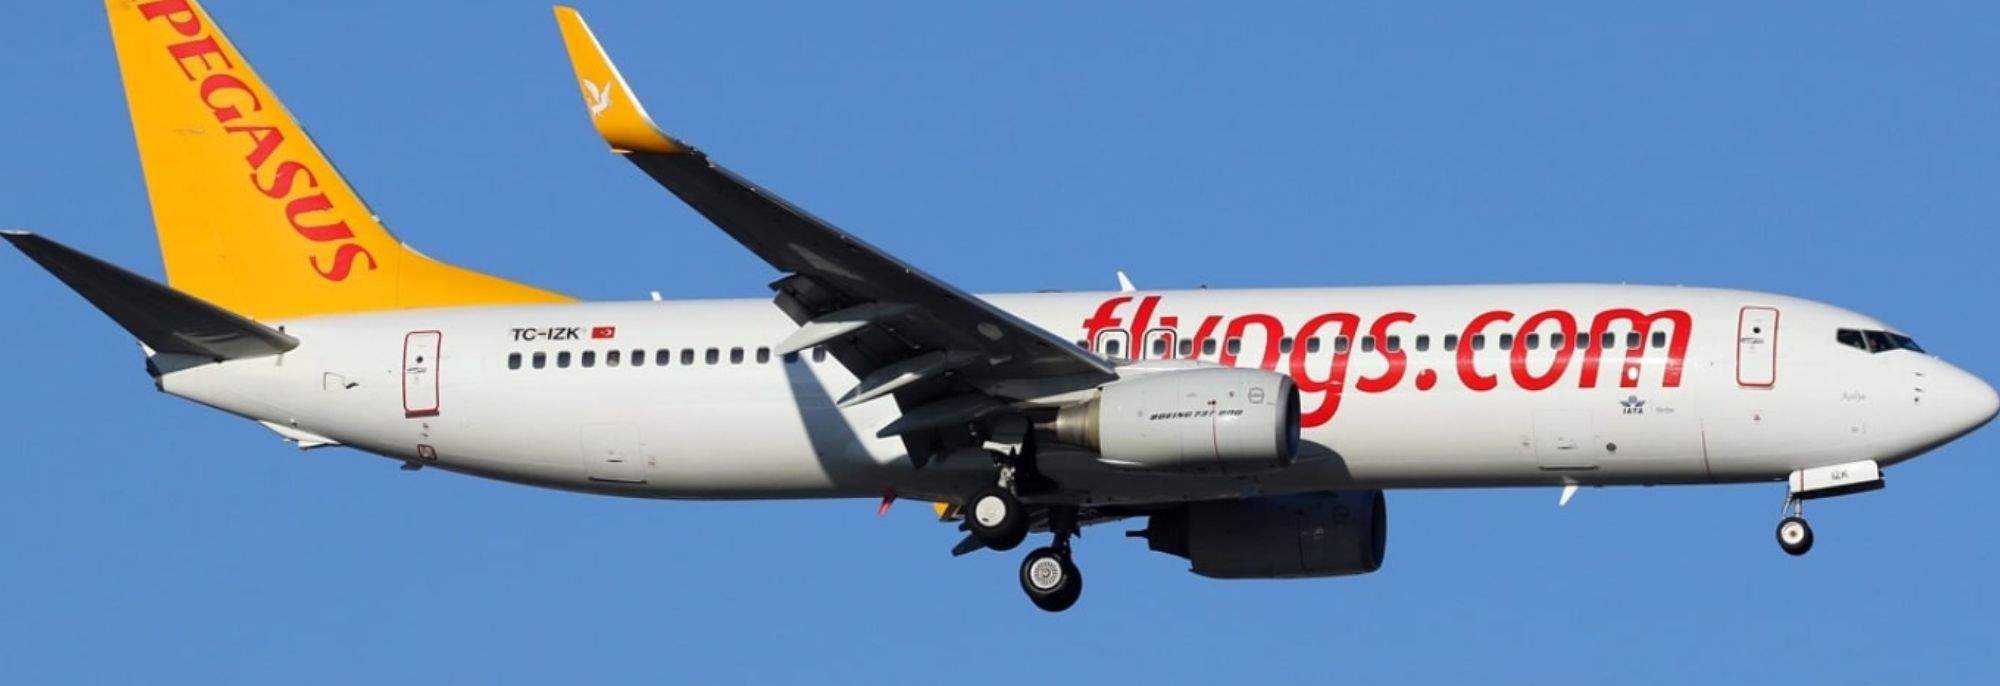 Förbindelse Turkiet-Polen: Pegasus Airlines landar på Krakows flygplats